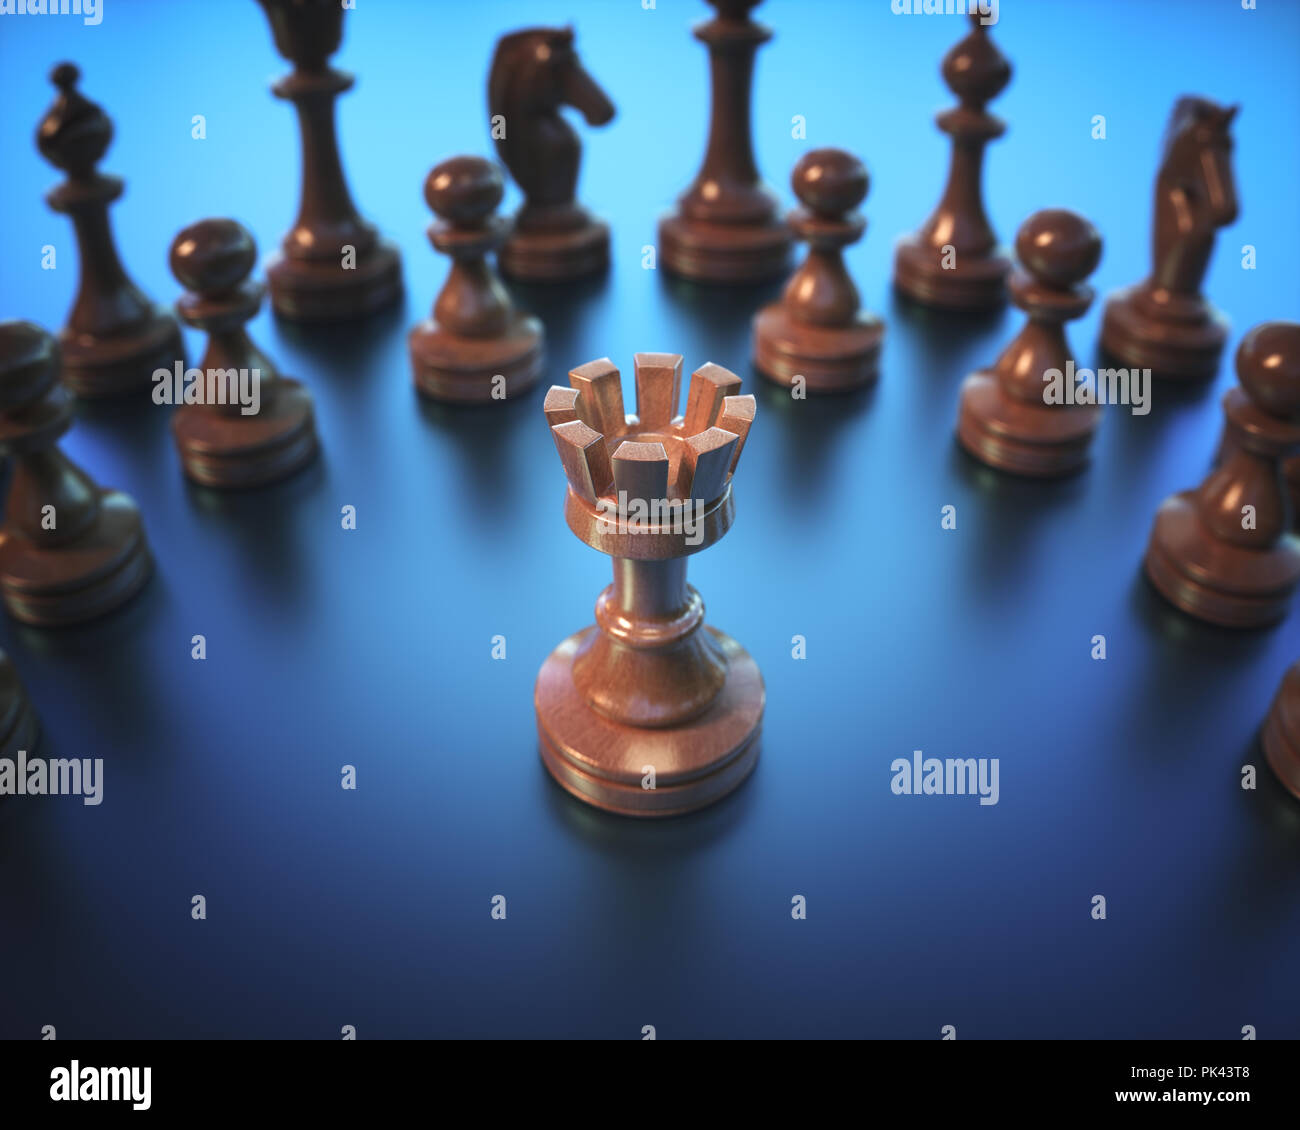 La tour à mettre en évidence. Pièces de jeu d'échecs, de droit avec une faible profondeur de champ. Banque D'Images